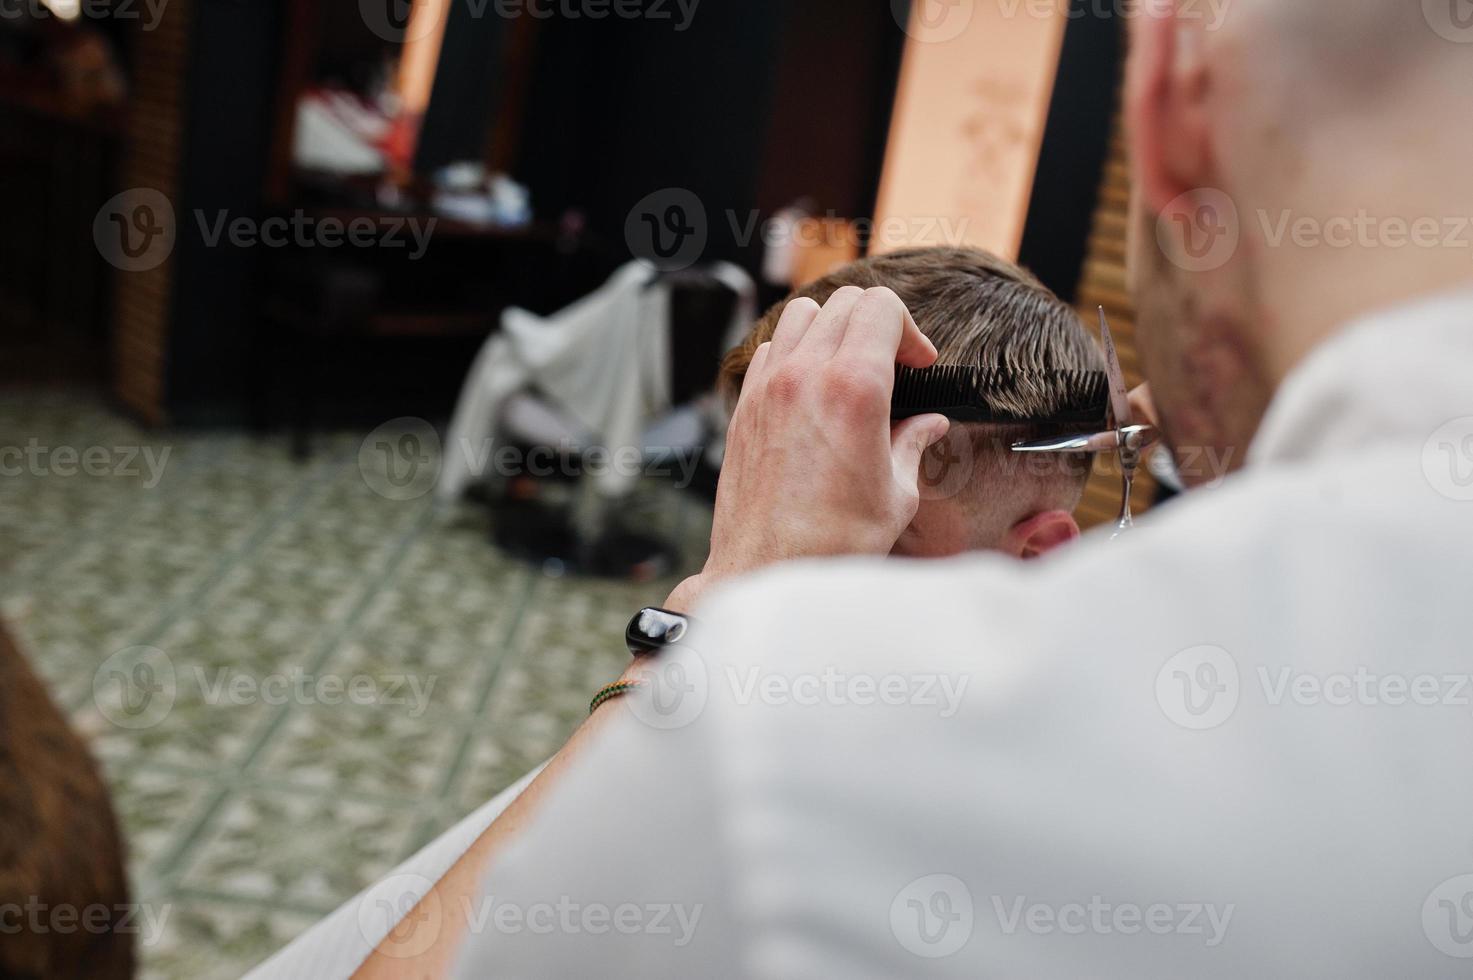 jonge, bebaarde man wordt geknipt door kapper terwijl hij in de stoel zit bij de kapperszaak. kapper ziel. foto